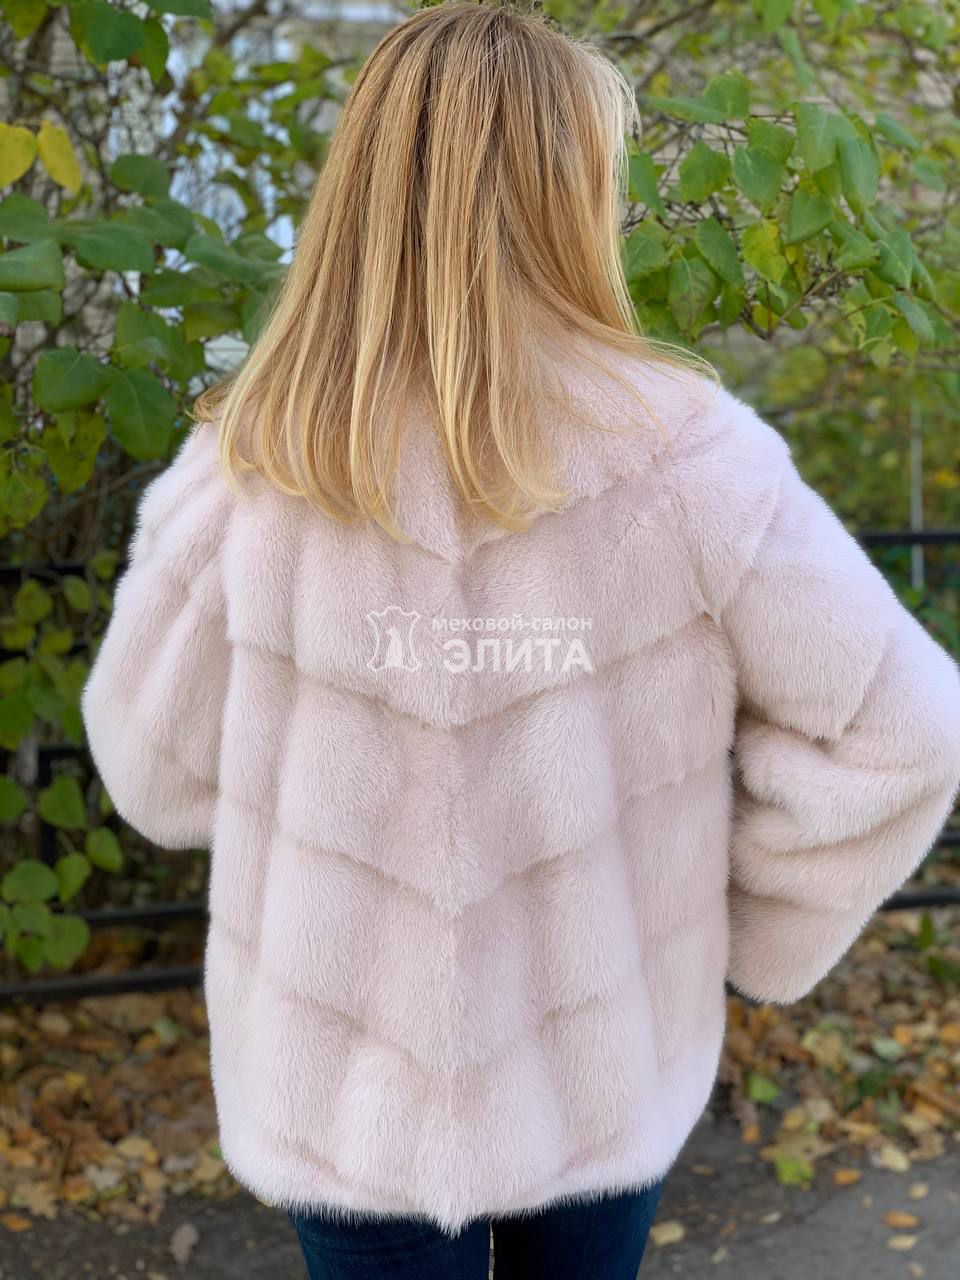 Куртка из норки S-12021, р-р 46-50, цена 104600 рублей в интернет-магазине кожи и меха ЭЛИТА. Вид 2